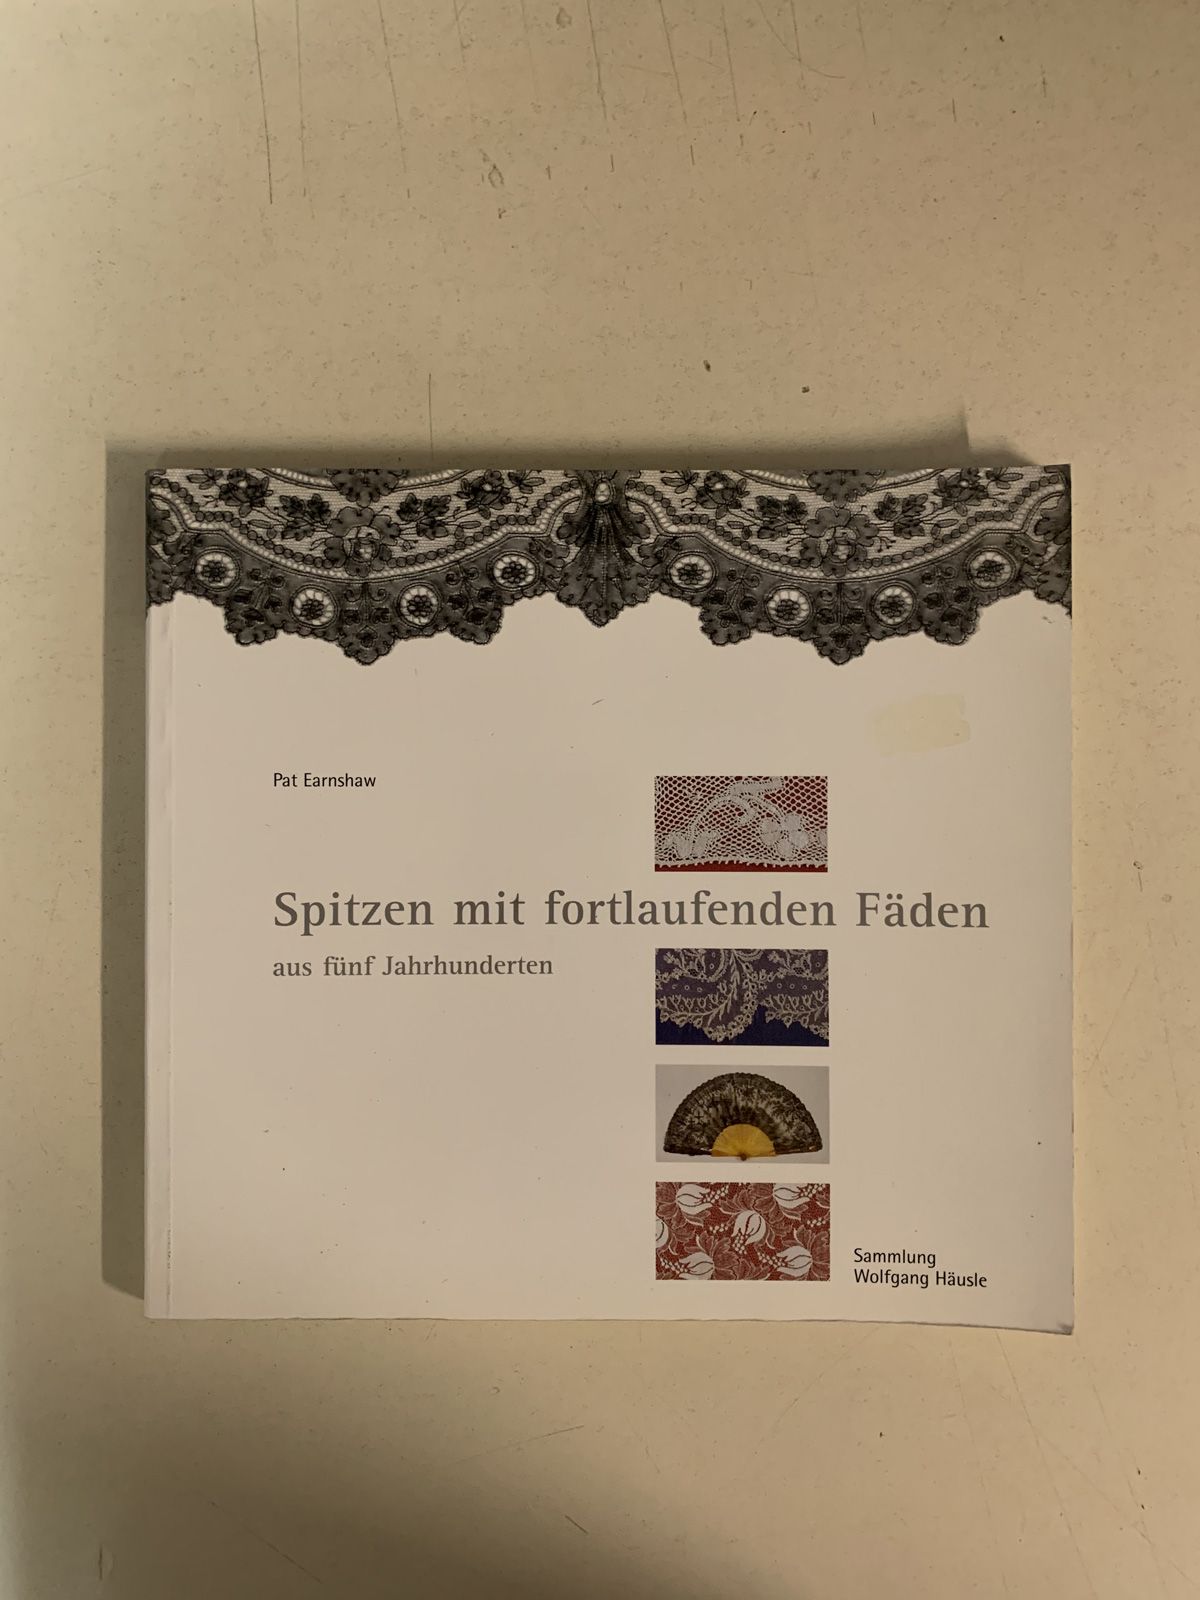 Null Tredici libri in tedesco sulle tecniche del merletto.
Tre libri sul merlett&hellip;